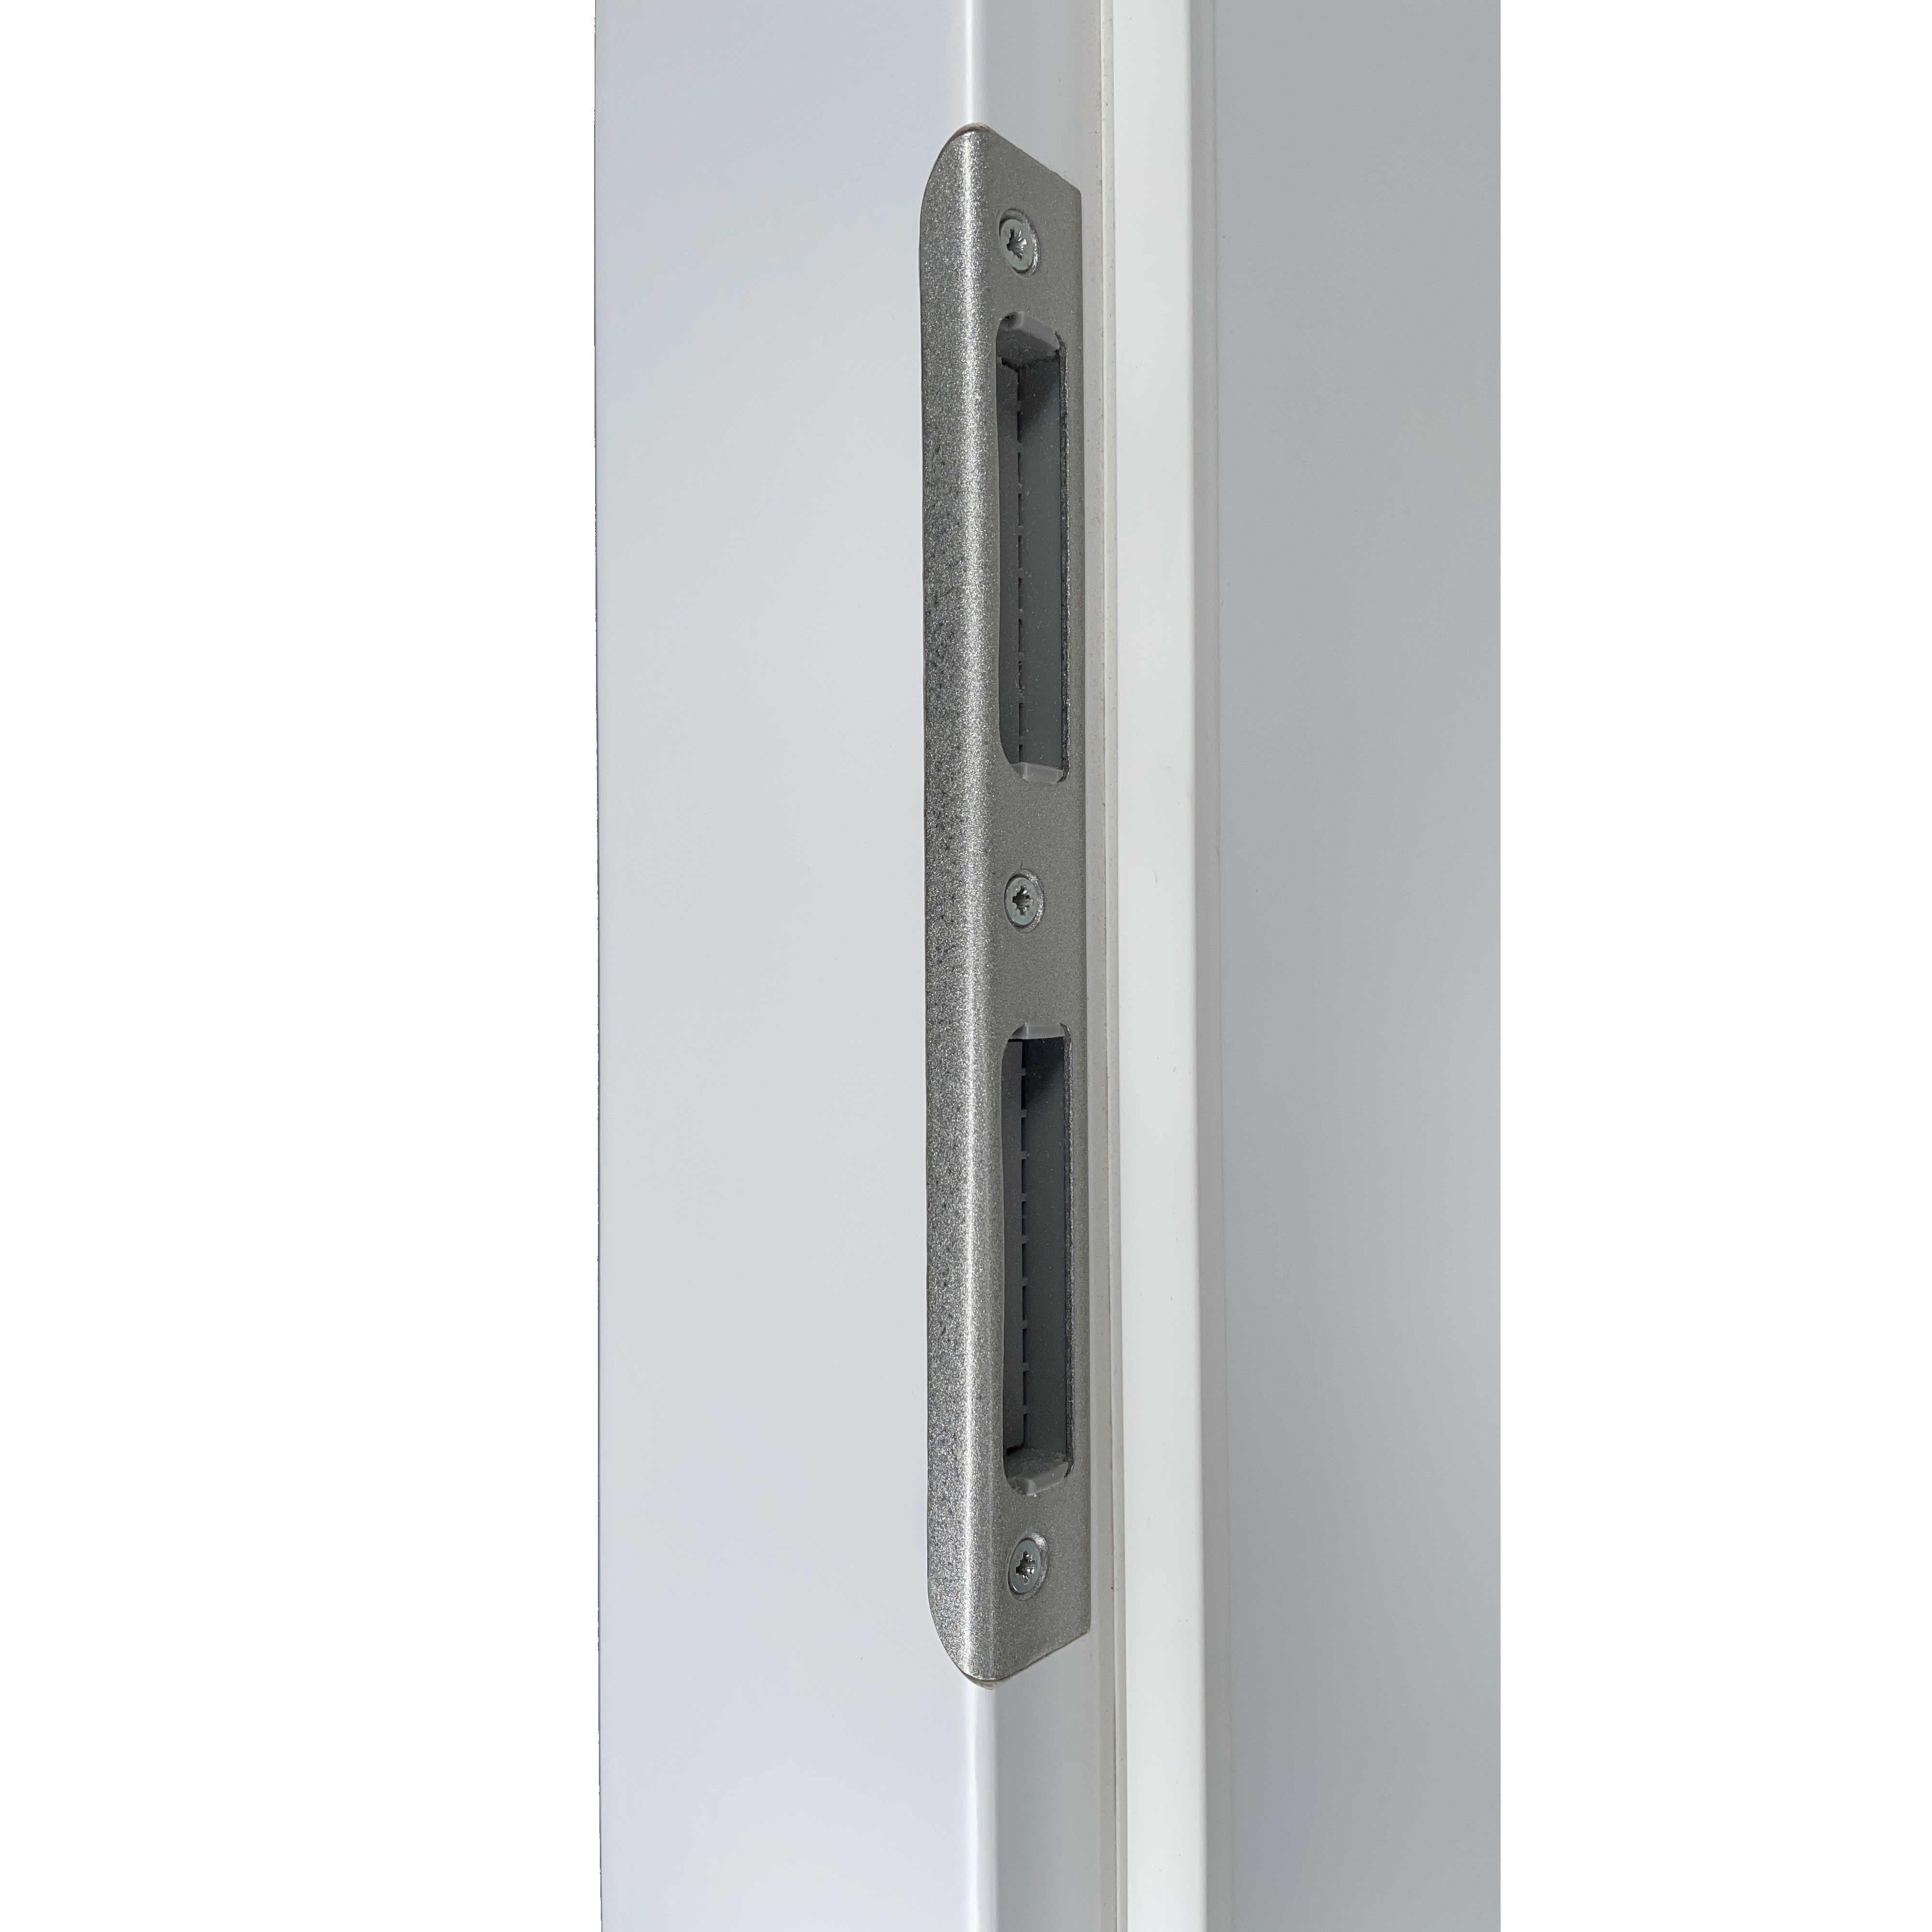 Zimmertür mit Zarge brillant-weiß modern mit 4 Rillen und Lichtausschnitt Designkante - Modell Designtür Q43LA